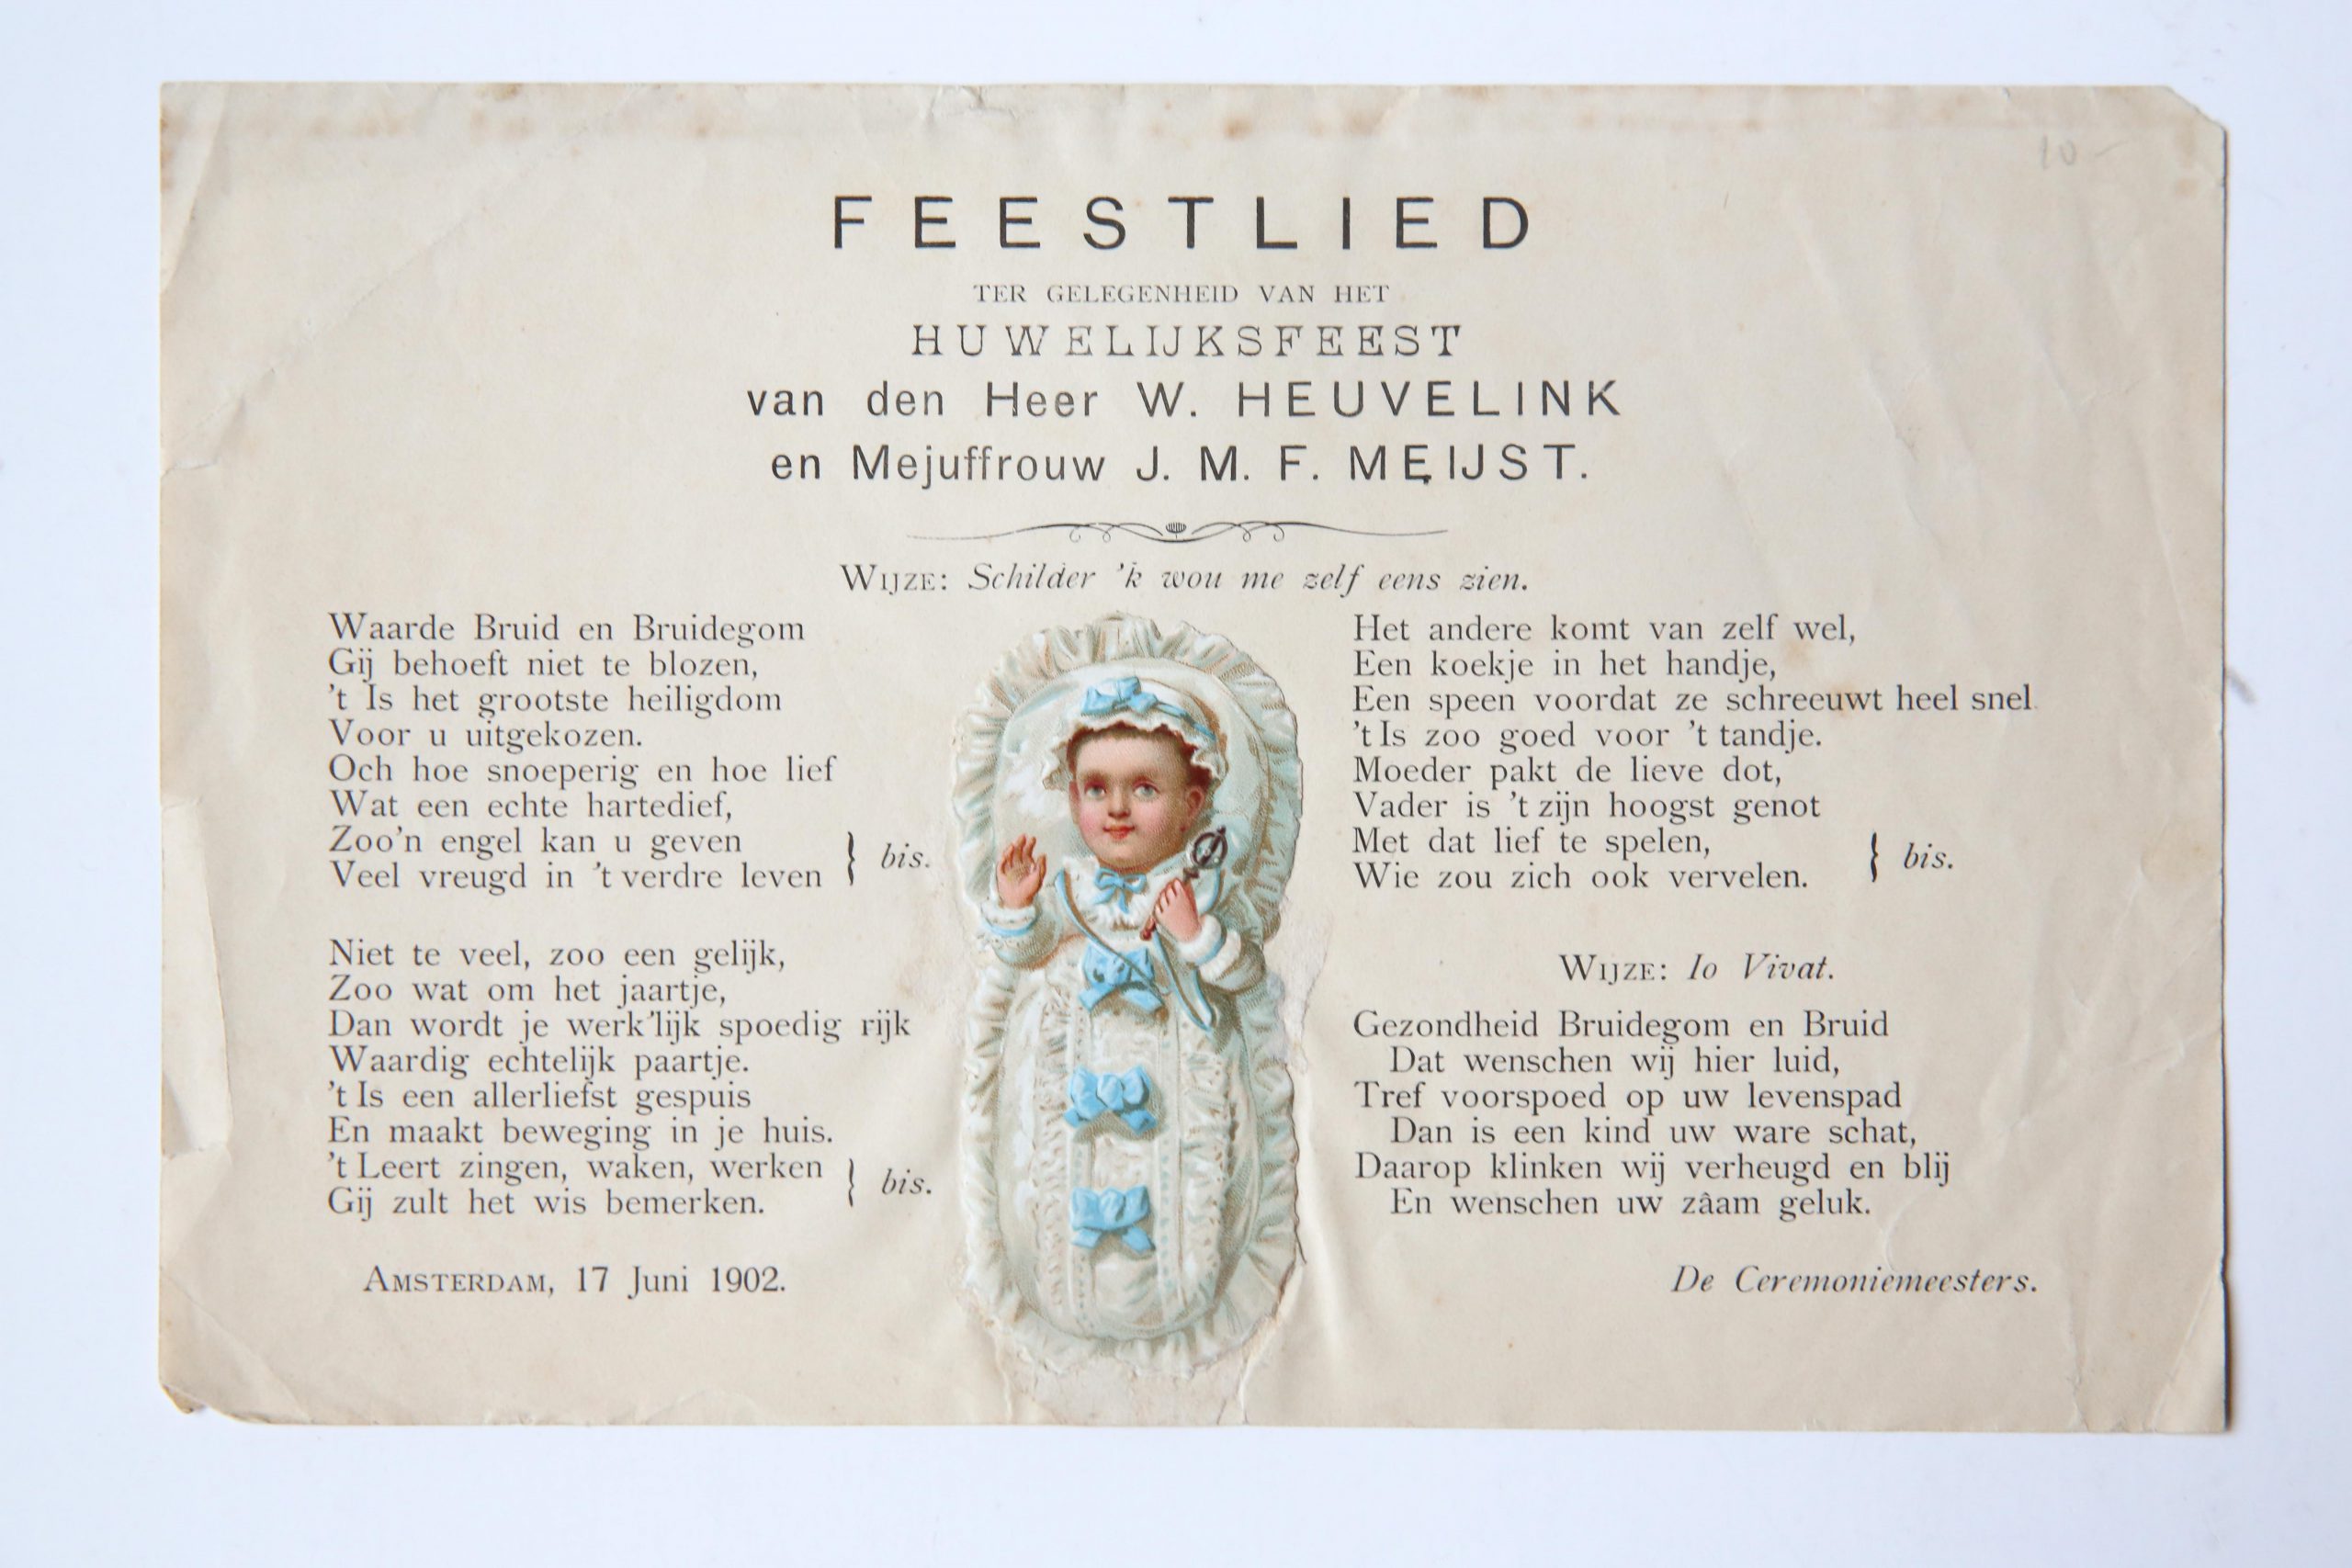  - Feestlied ter gelegenheid van het huwelijksfeest van den heer W. Heuvelink en mejuffrouw J.M.F. Meyst. Amsterdam, 17 juni 1902. 8 oblong: 1 blz. Met opgeplakt plaatje van baby.